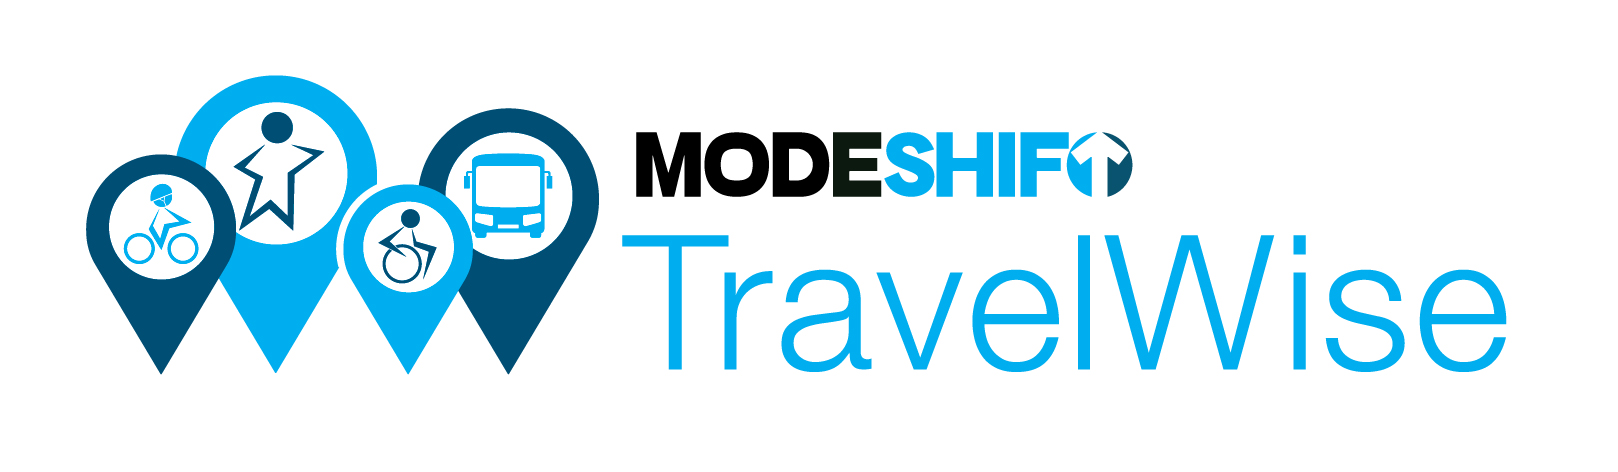 Modeshift TravelWise logo image